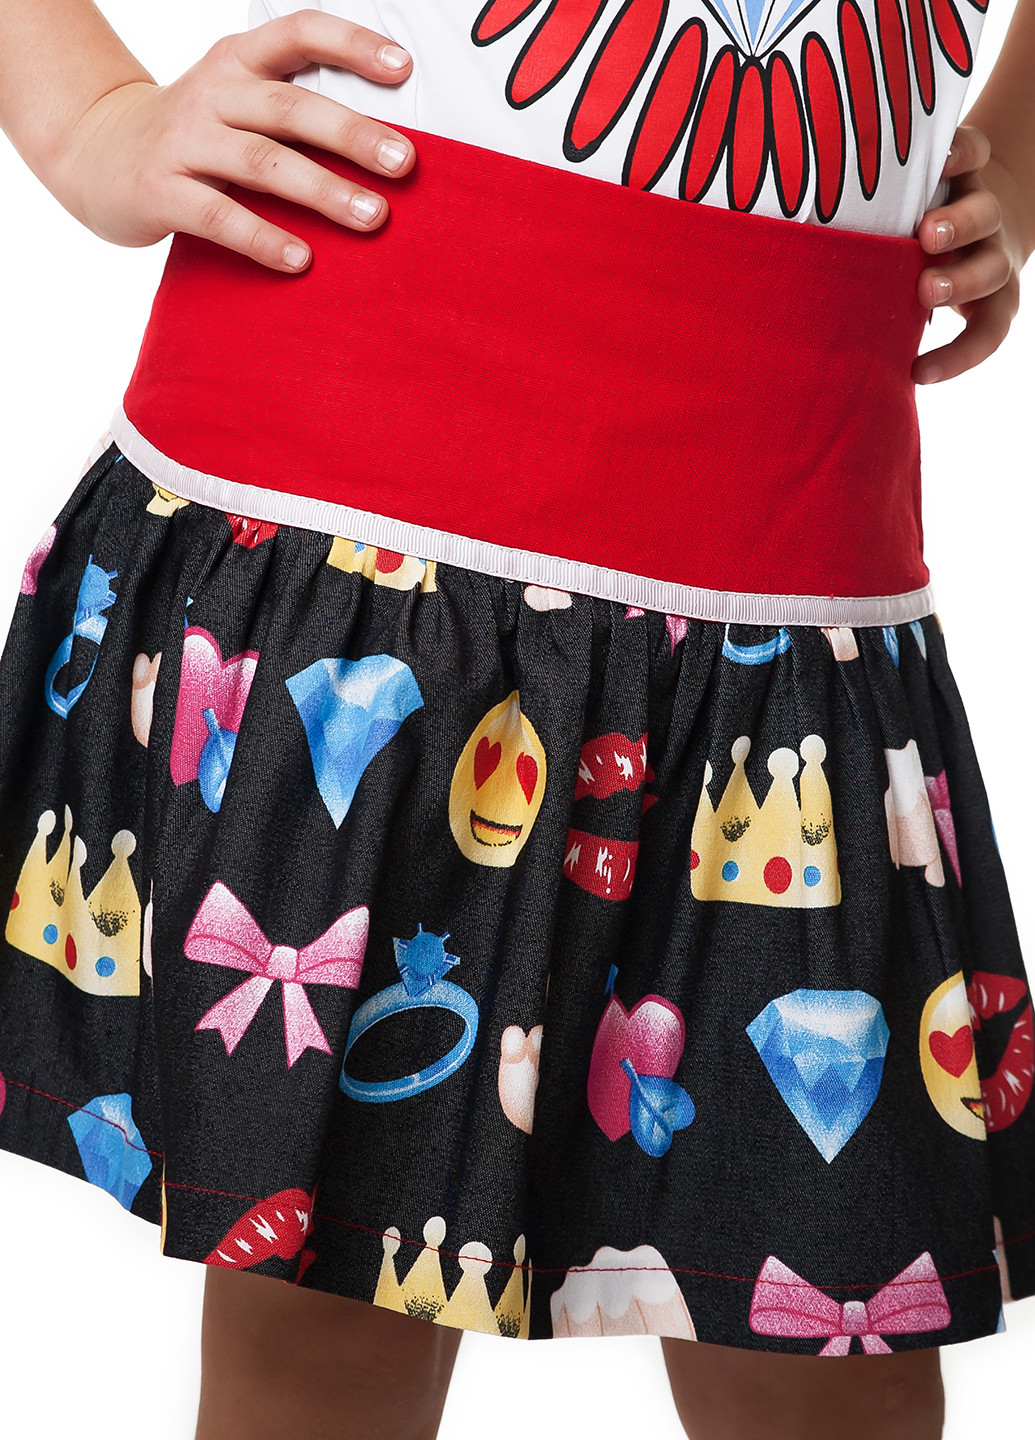 Черная кэжуал с рисунком юбка Kids Couture мини